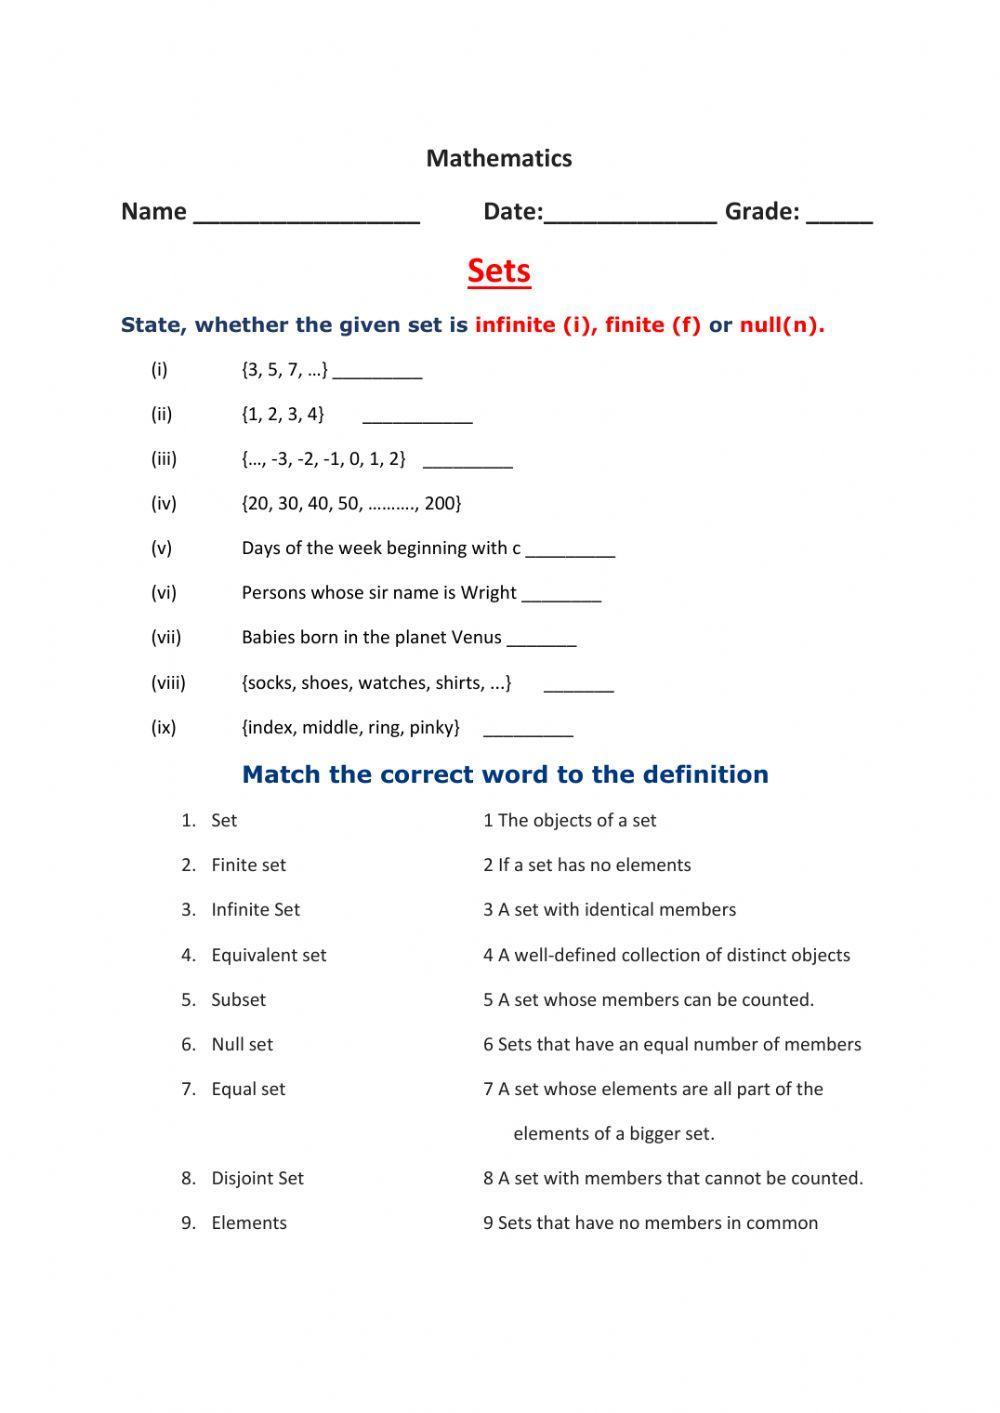 Types of sets worksheet | Live Worksheets